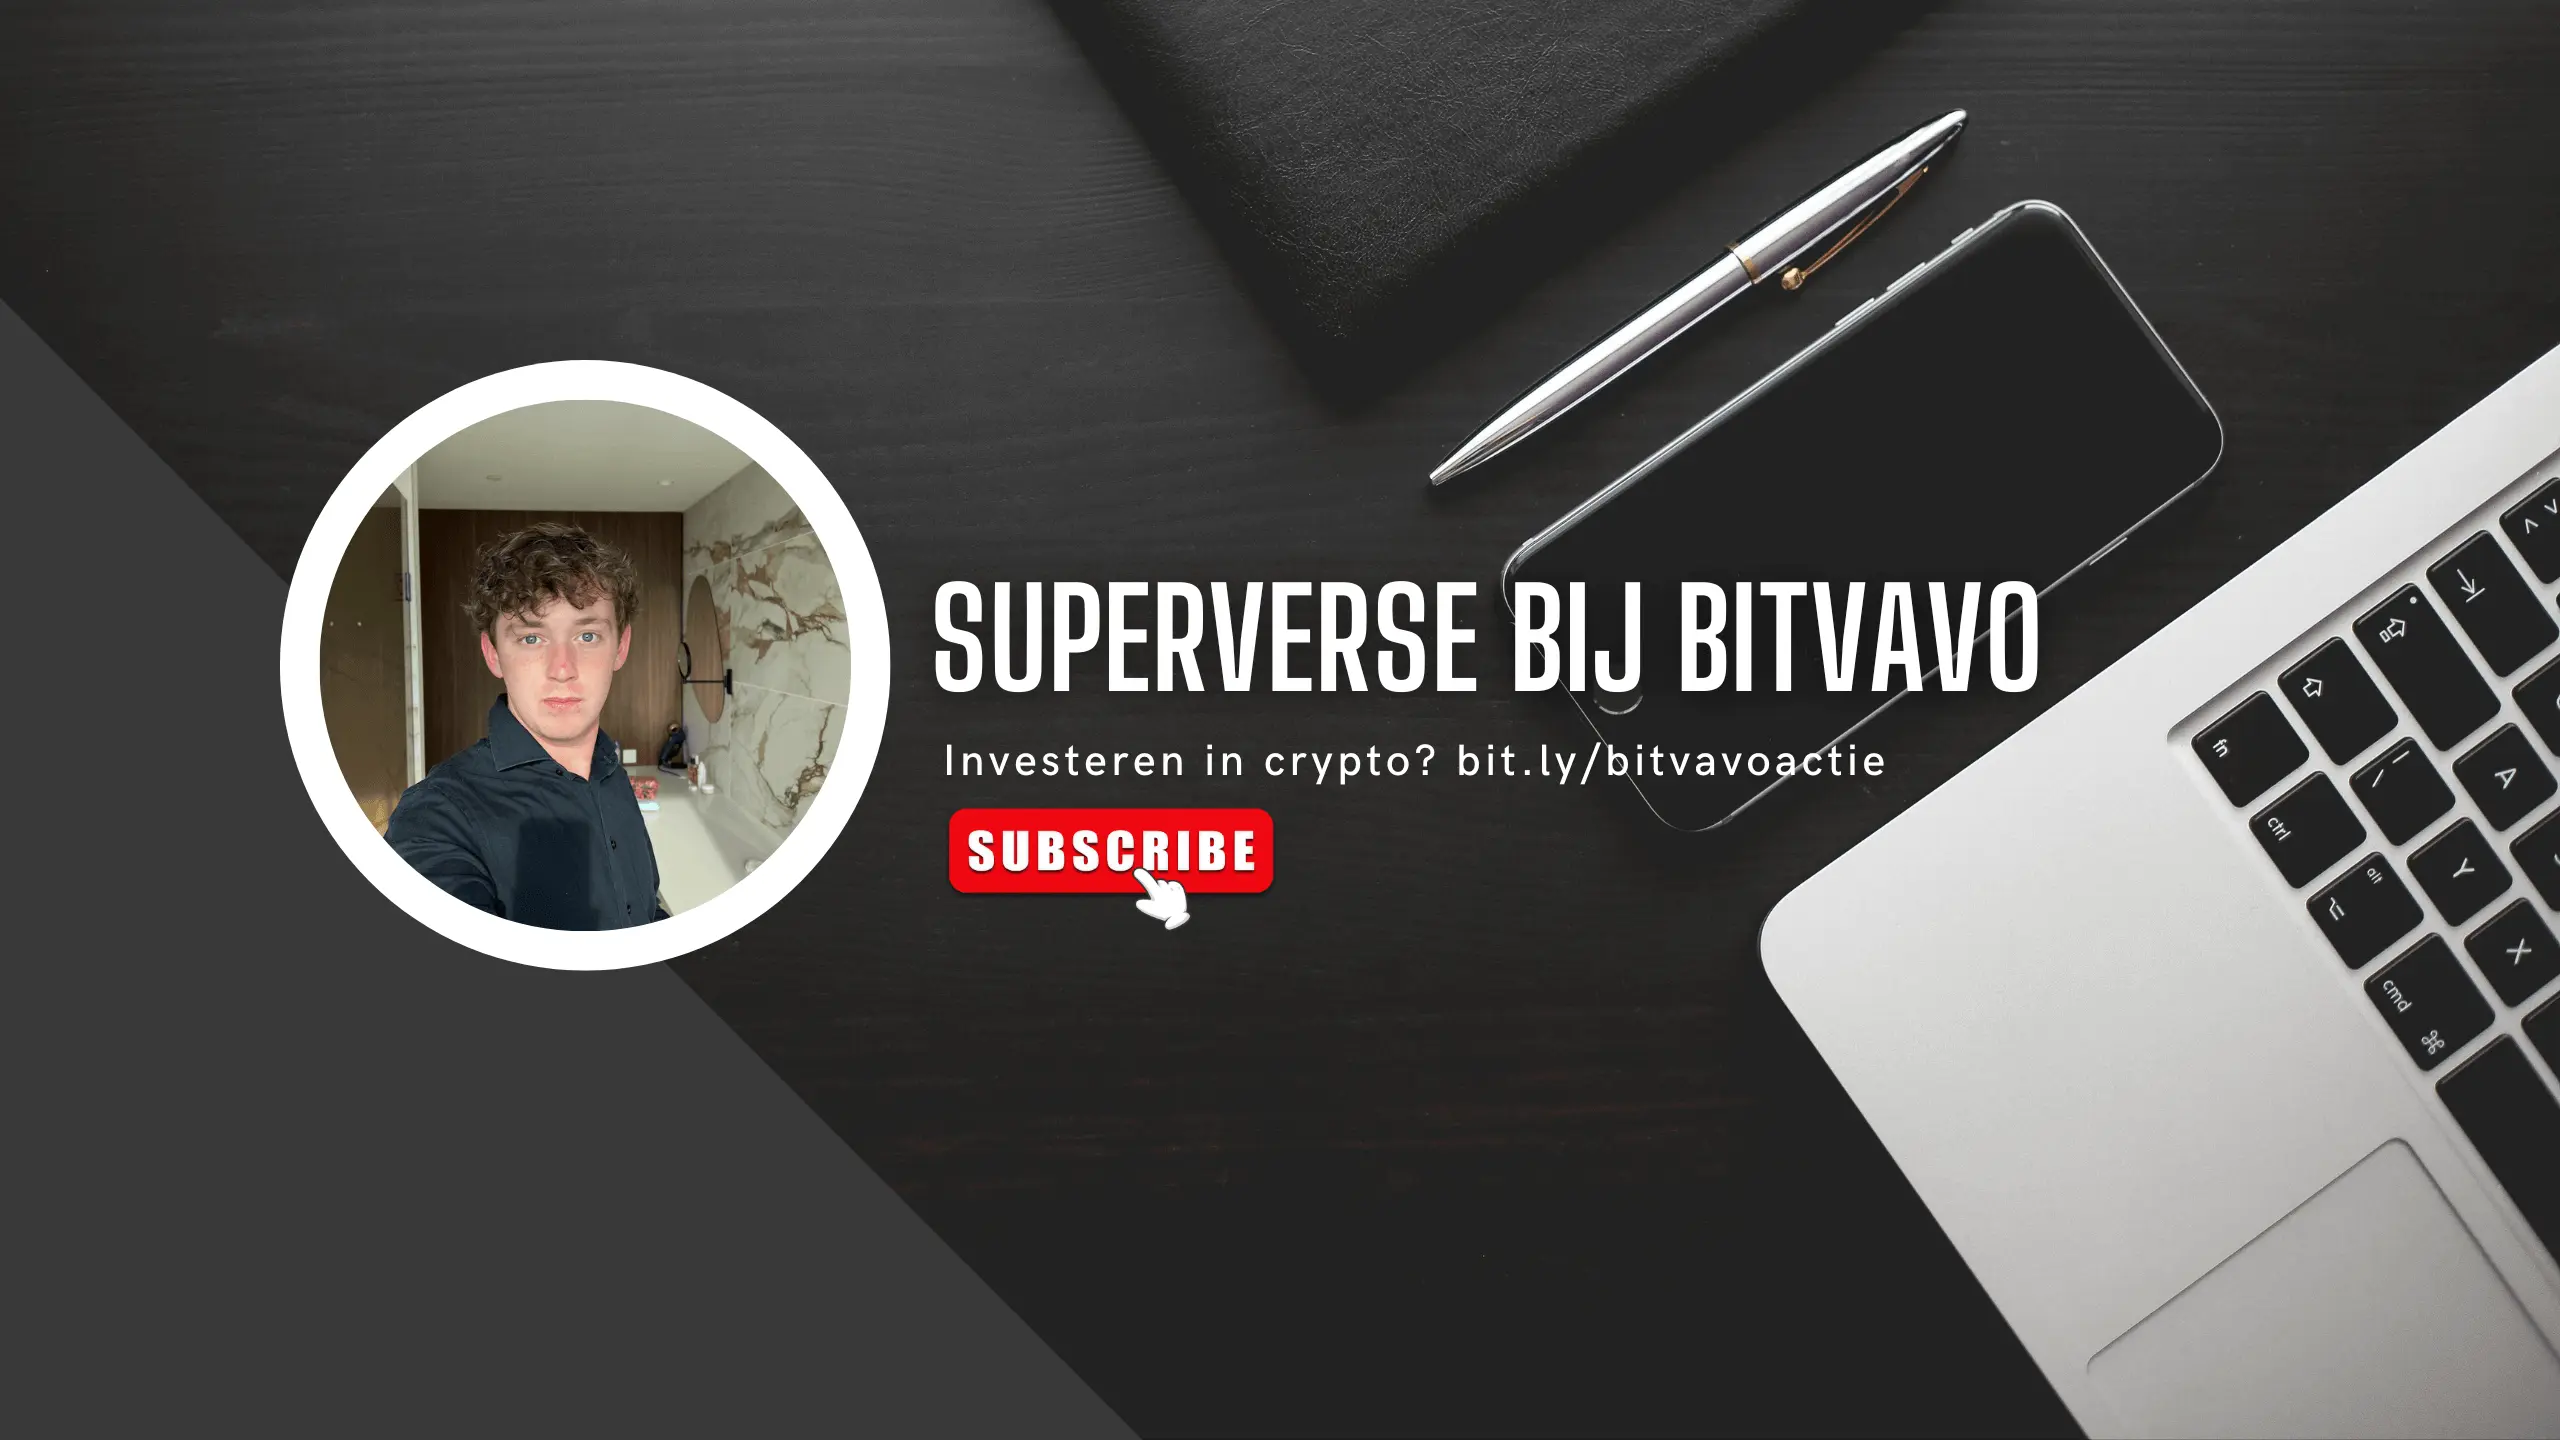 SuperVerse aanschaffen bij Bitvavo? Lees dit eerst